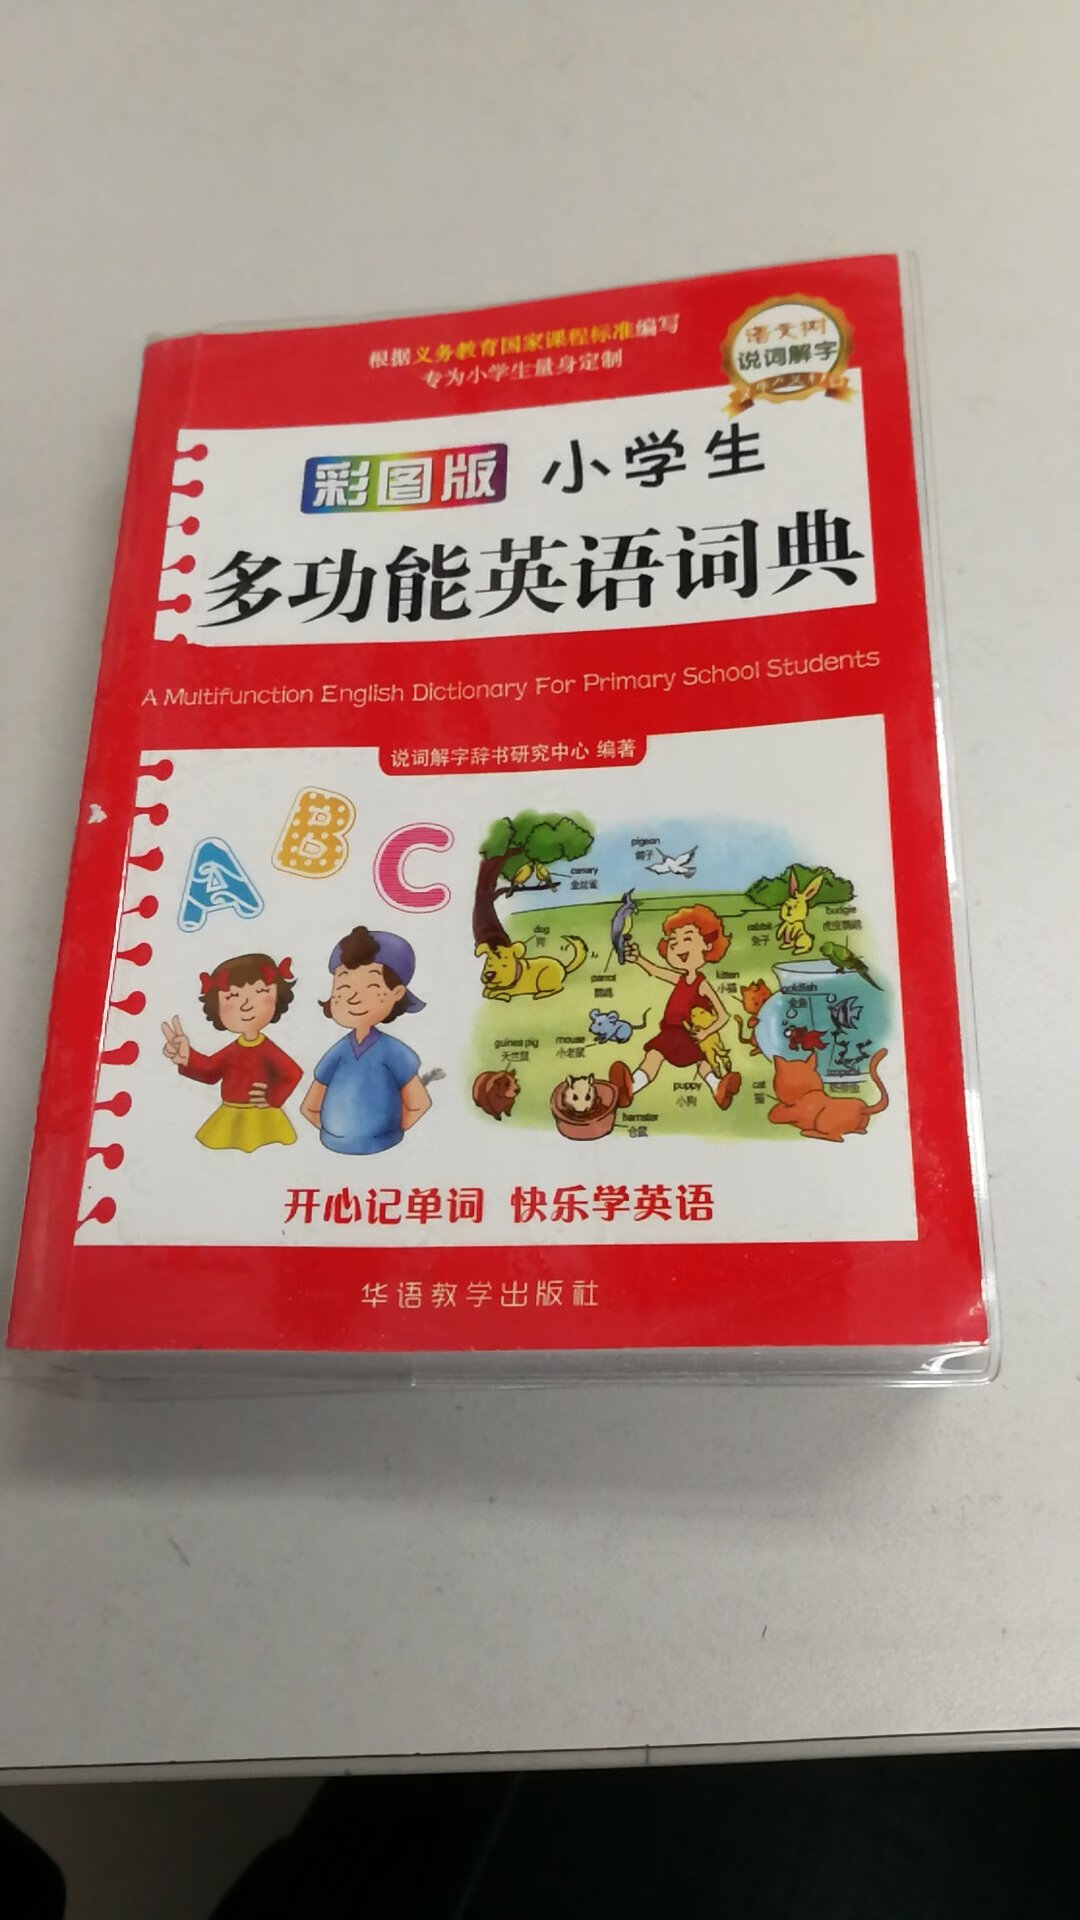 很精美的一本书，彩色印刷的，里面配了很多精美插图，孩子非常喜欢，学习英语的好帮手！